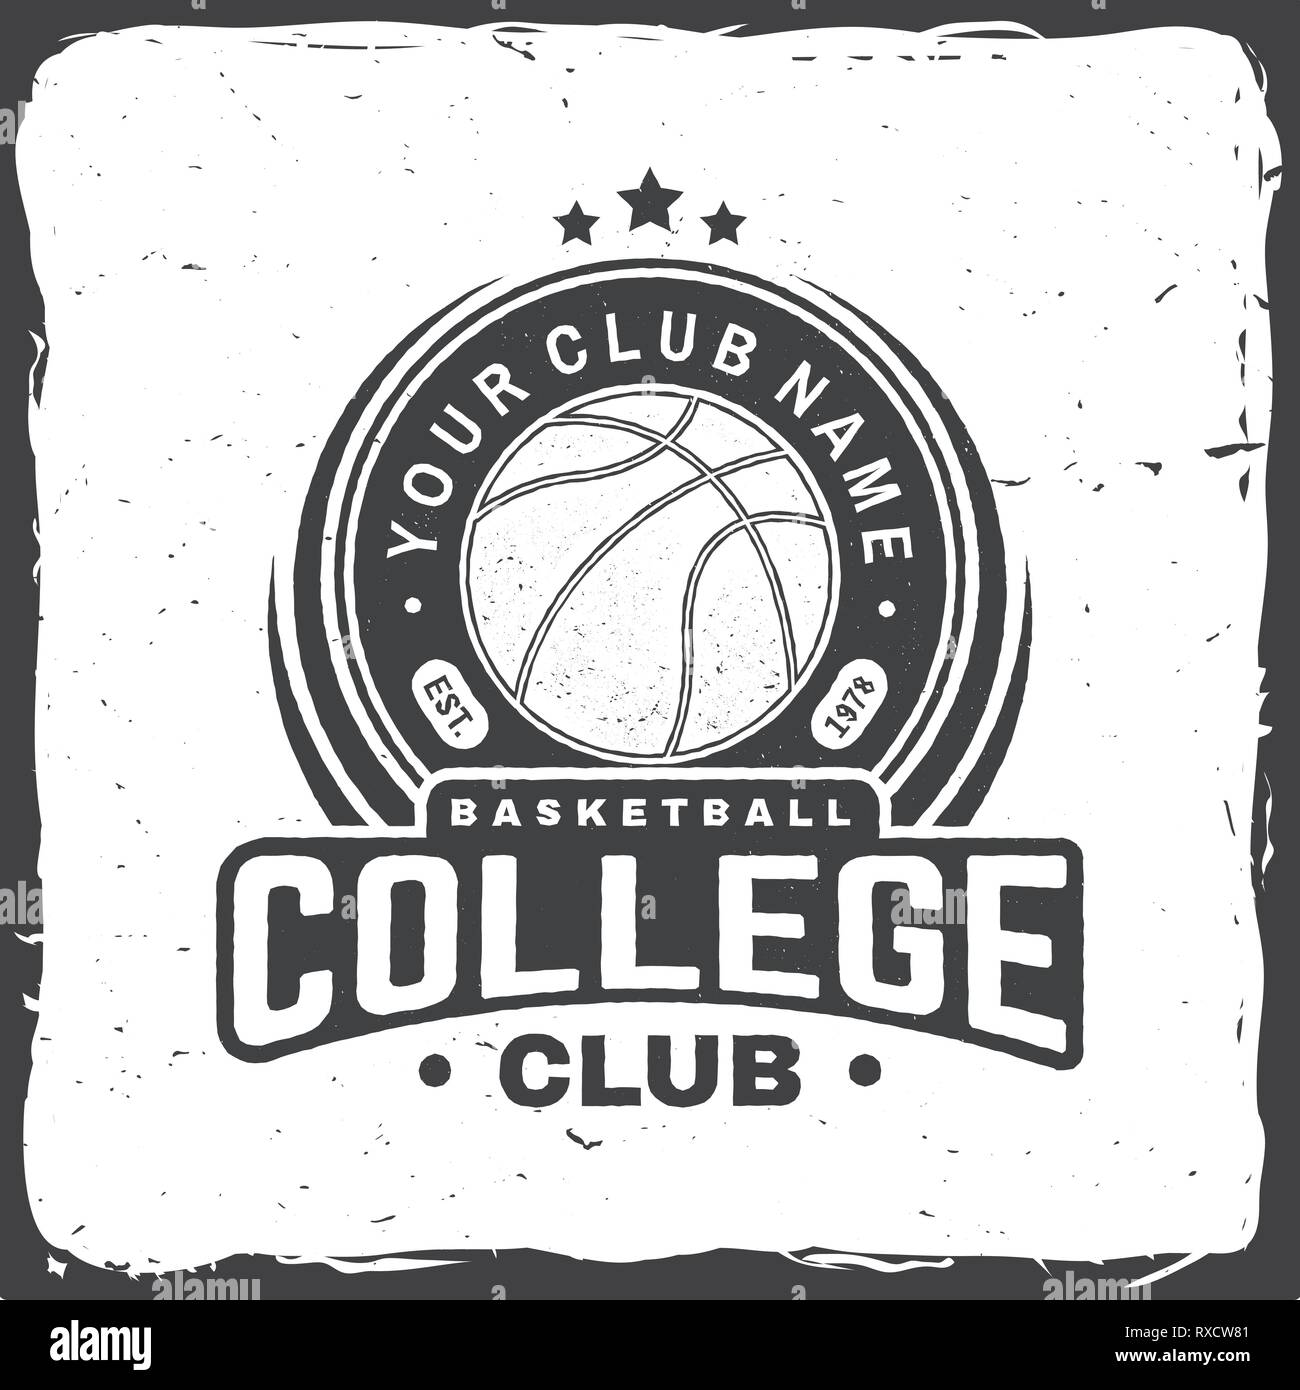 Collège Basket-ball club badge. Vector illustration. Concept pour chemise, imprimer, stamp ou tee. Design typographie vintage avec le basket ball silhouette. Illustration de Vecteur